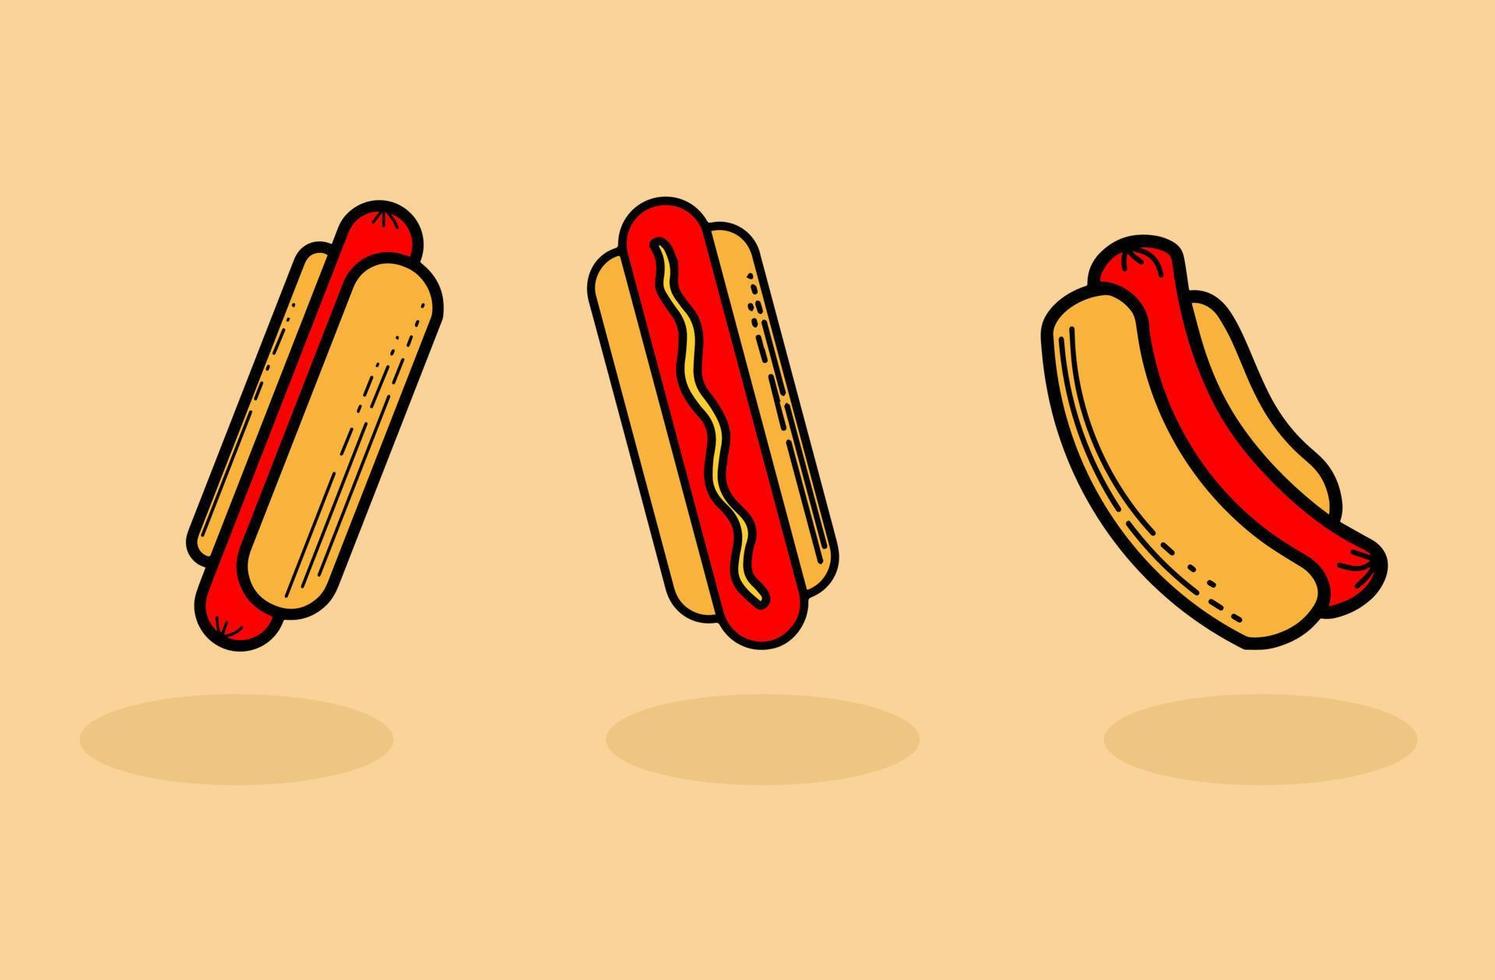 Baum-Hotdog-Illustrationen vektor